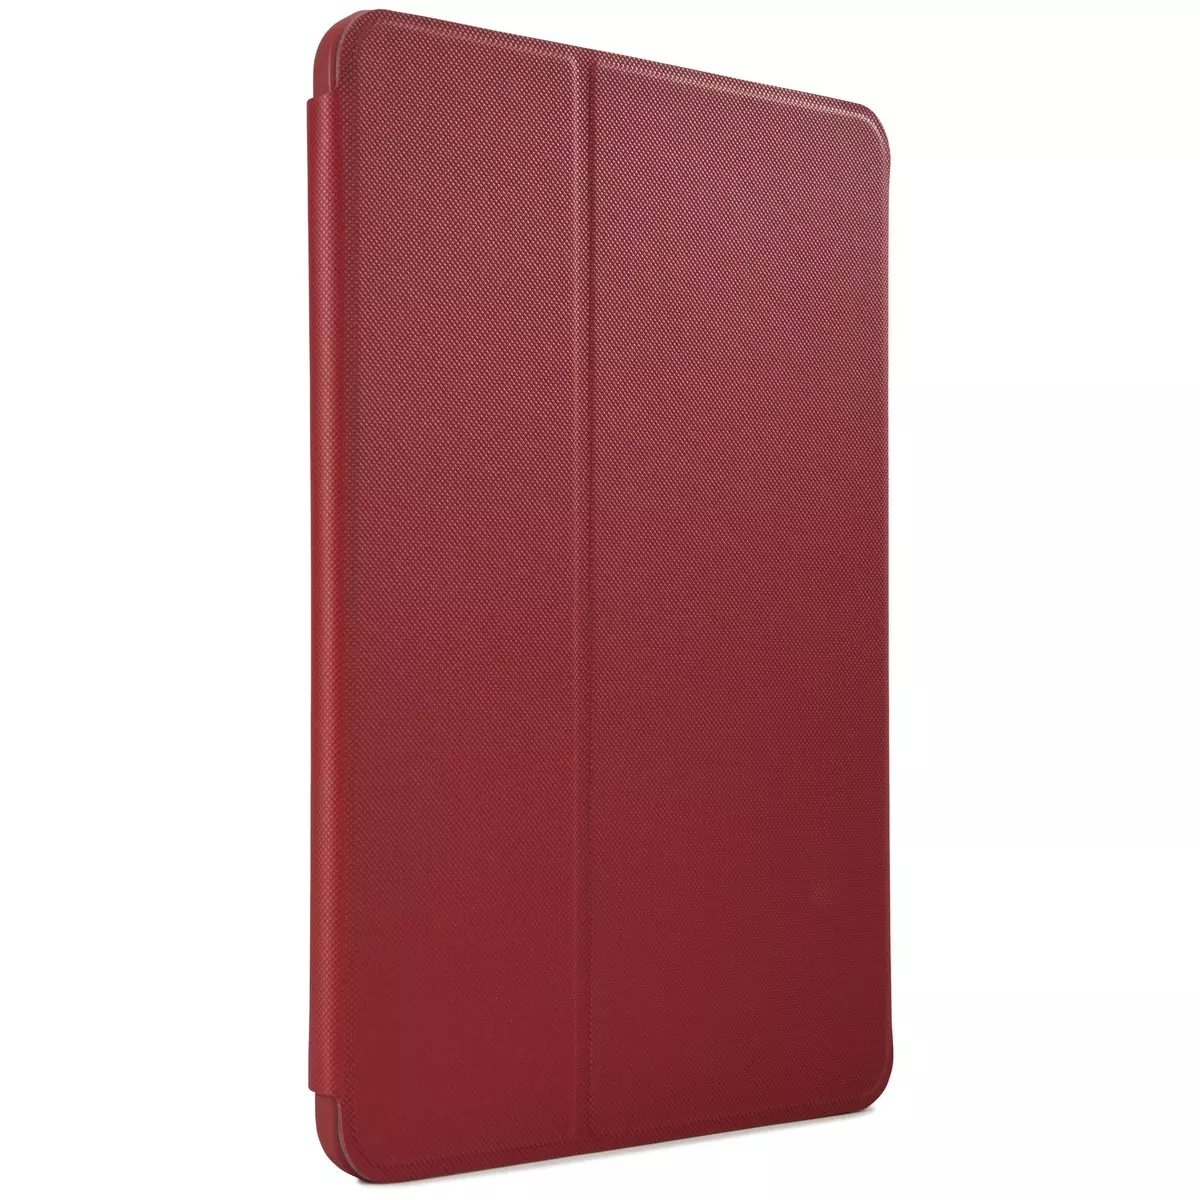 CASE LOGIC Etui folio rouge pour iPad 9,7"